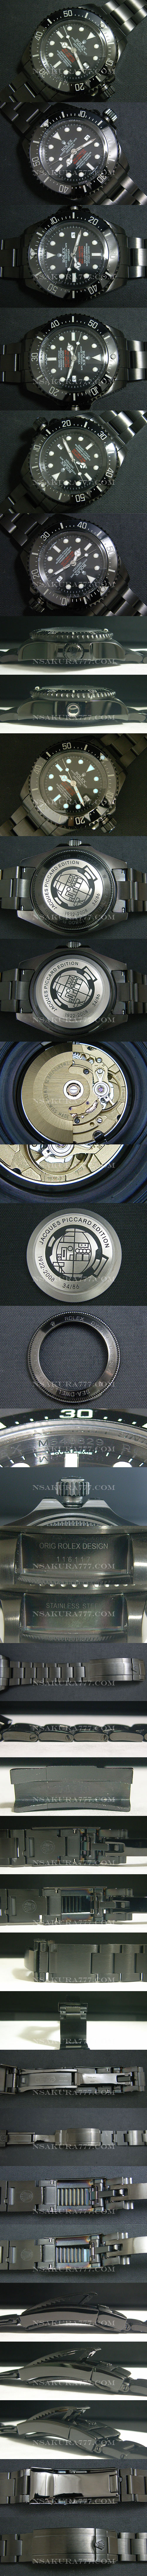 レプリカ時計ロレックス プロハンター シードゥエラーディープシー Jacques Piccard Edition asian - ウインドウを閉じる